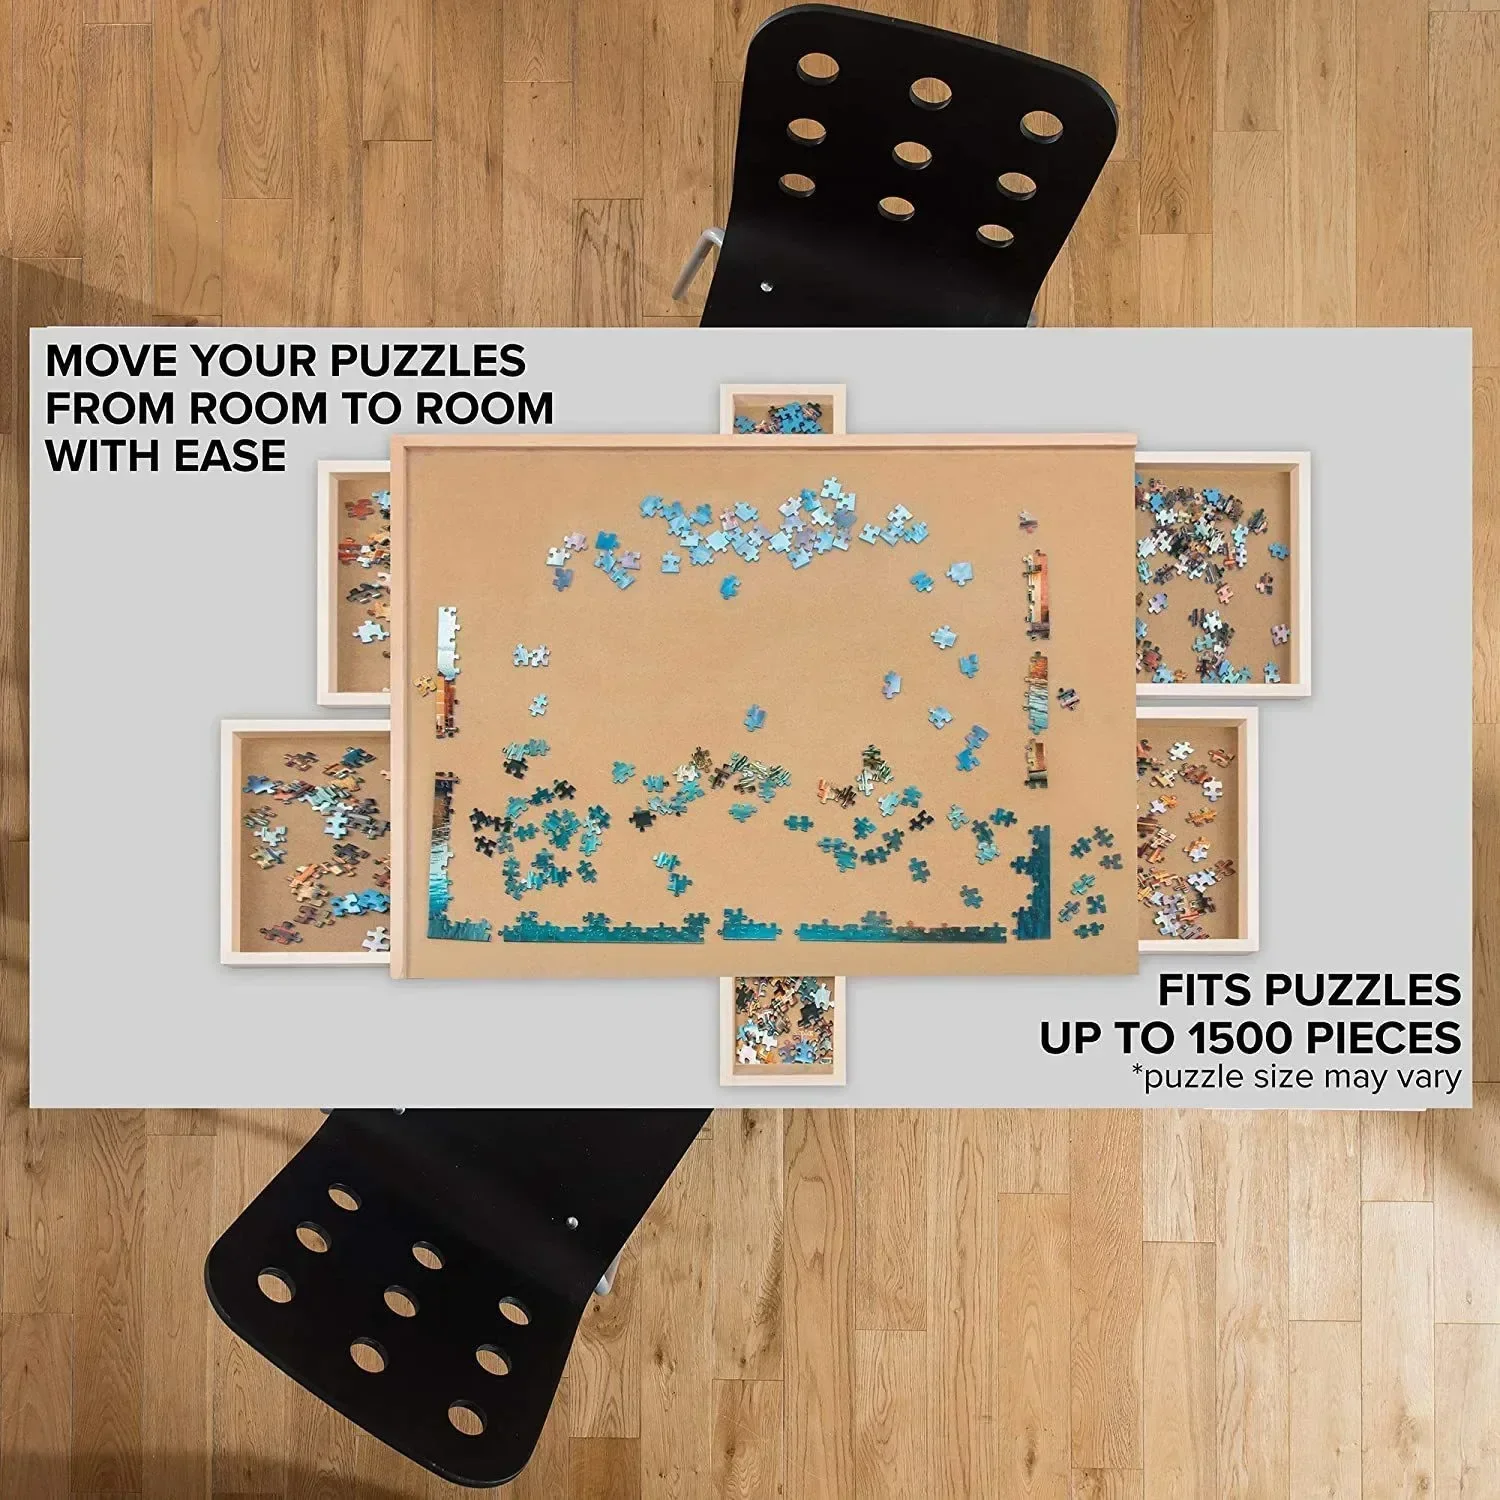 Board de puzzle portable 1500pcs Table de puzzle en bois en bois avec tiroirs couvre la table de puzzle rotative pour les enfants et les adultes